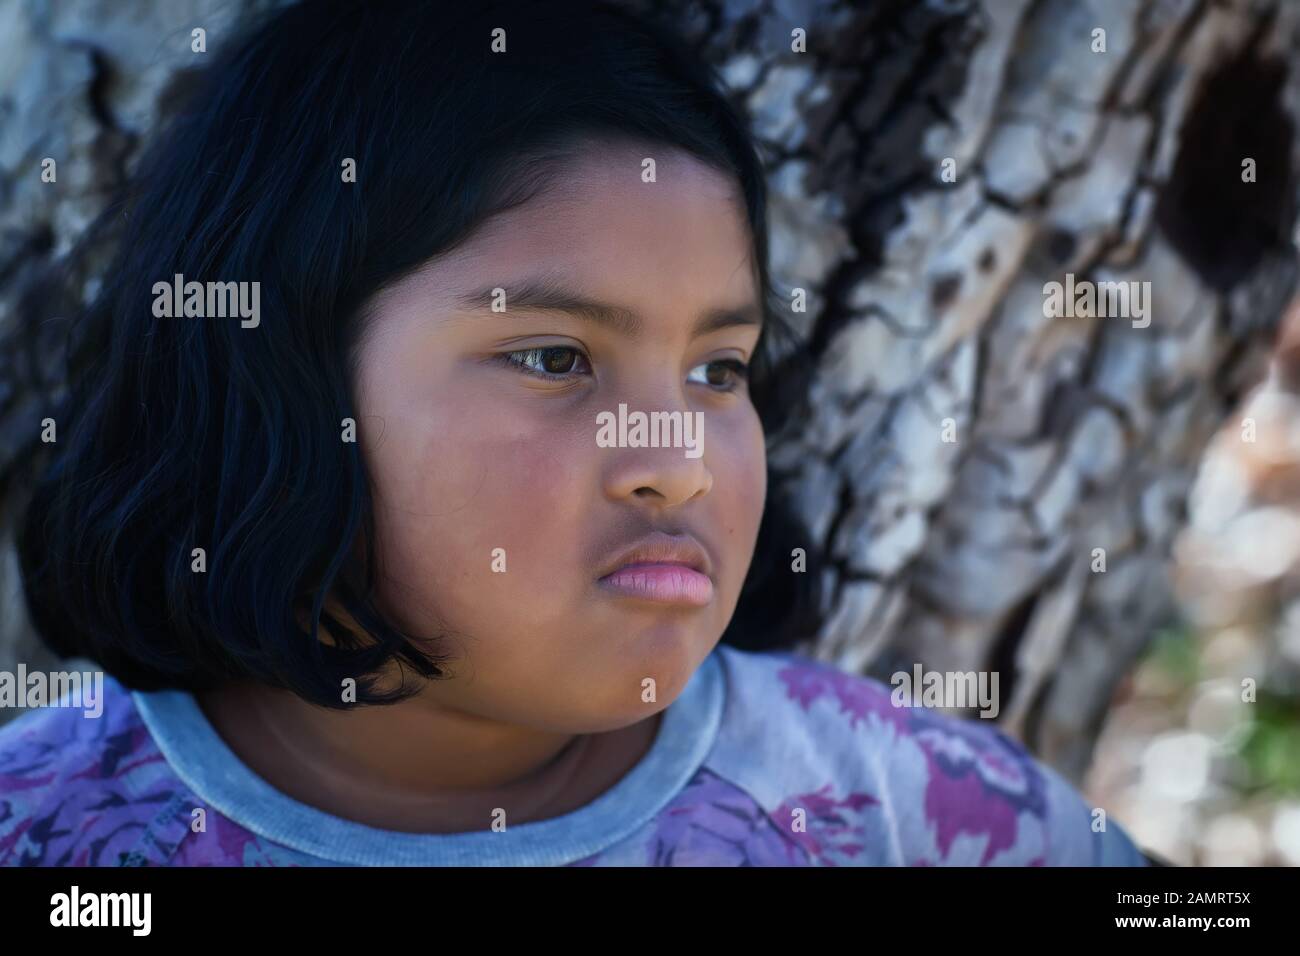 Ein kleines Mädchen mit einem aufgebrachten Gesichtsausdruck, das vor einem Baum steht. Stockfoto